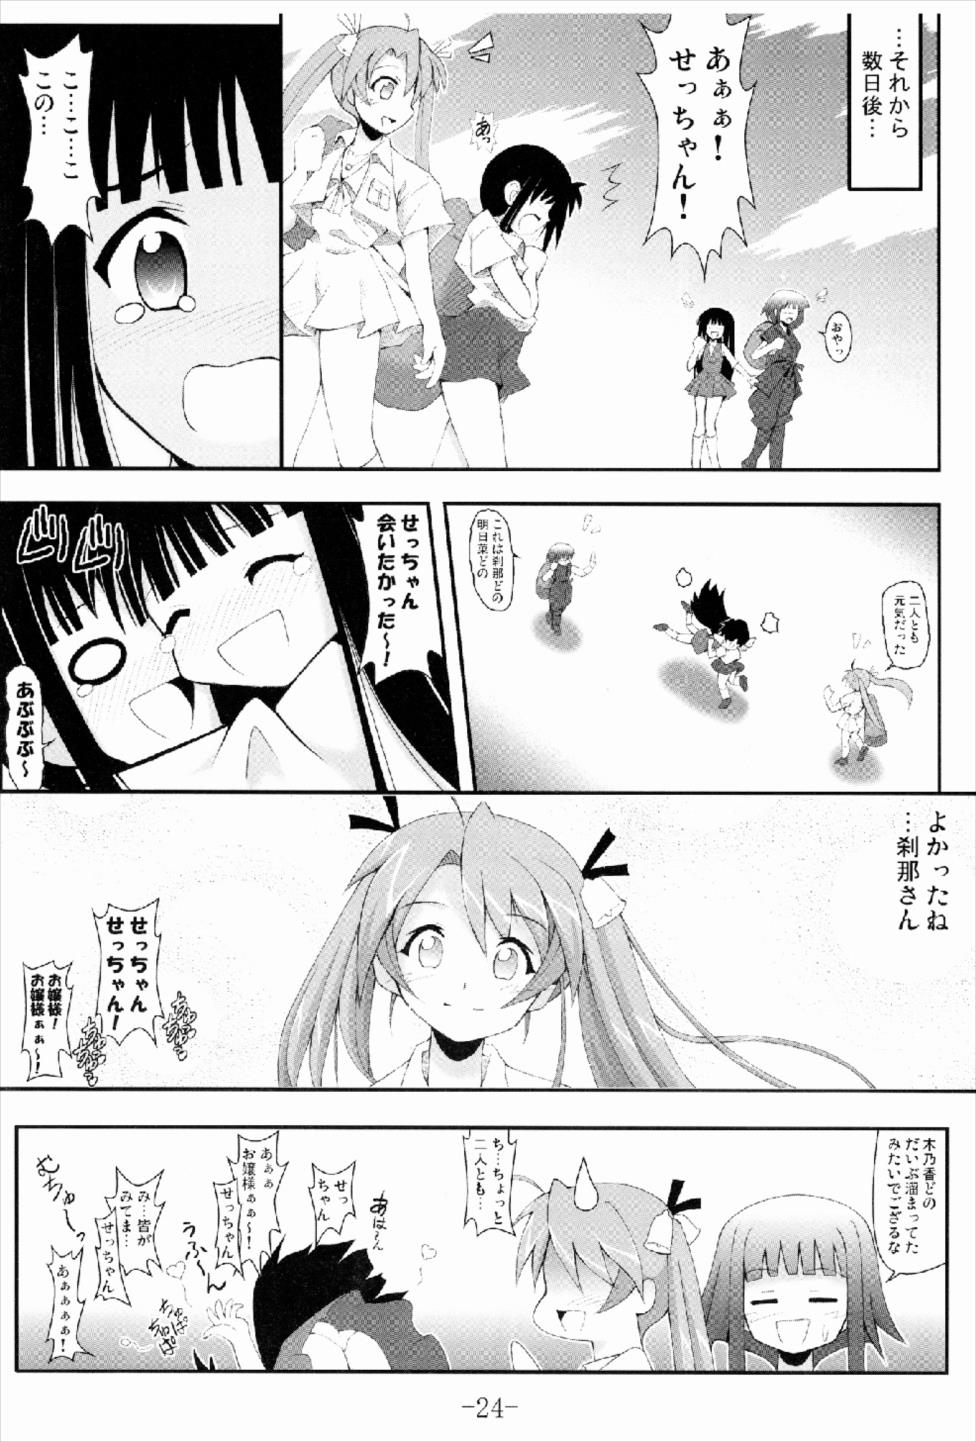 Page 24 C74 Baguri Sangyou Akichin Gurimaga Setsuna No Mousou Yume Shibai Mahou Sensei Negima Akuma Moe